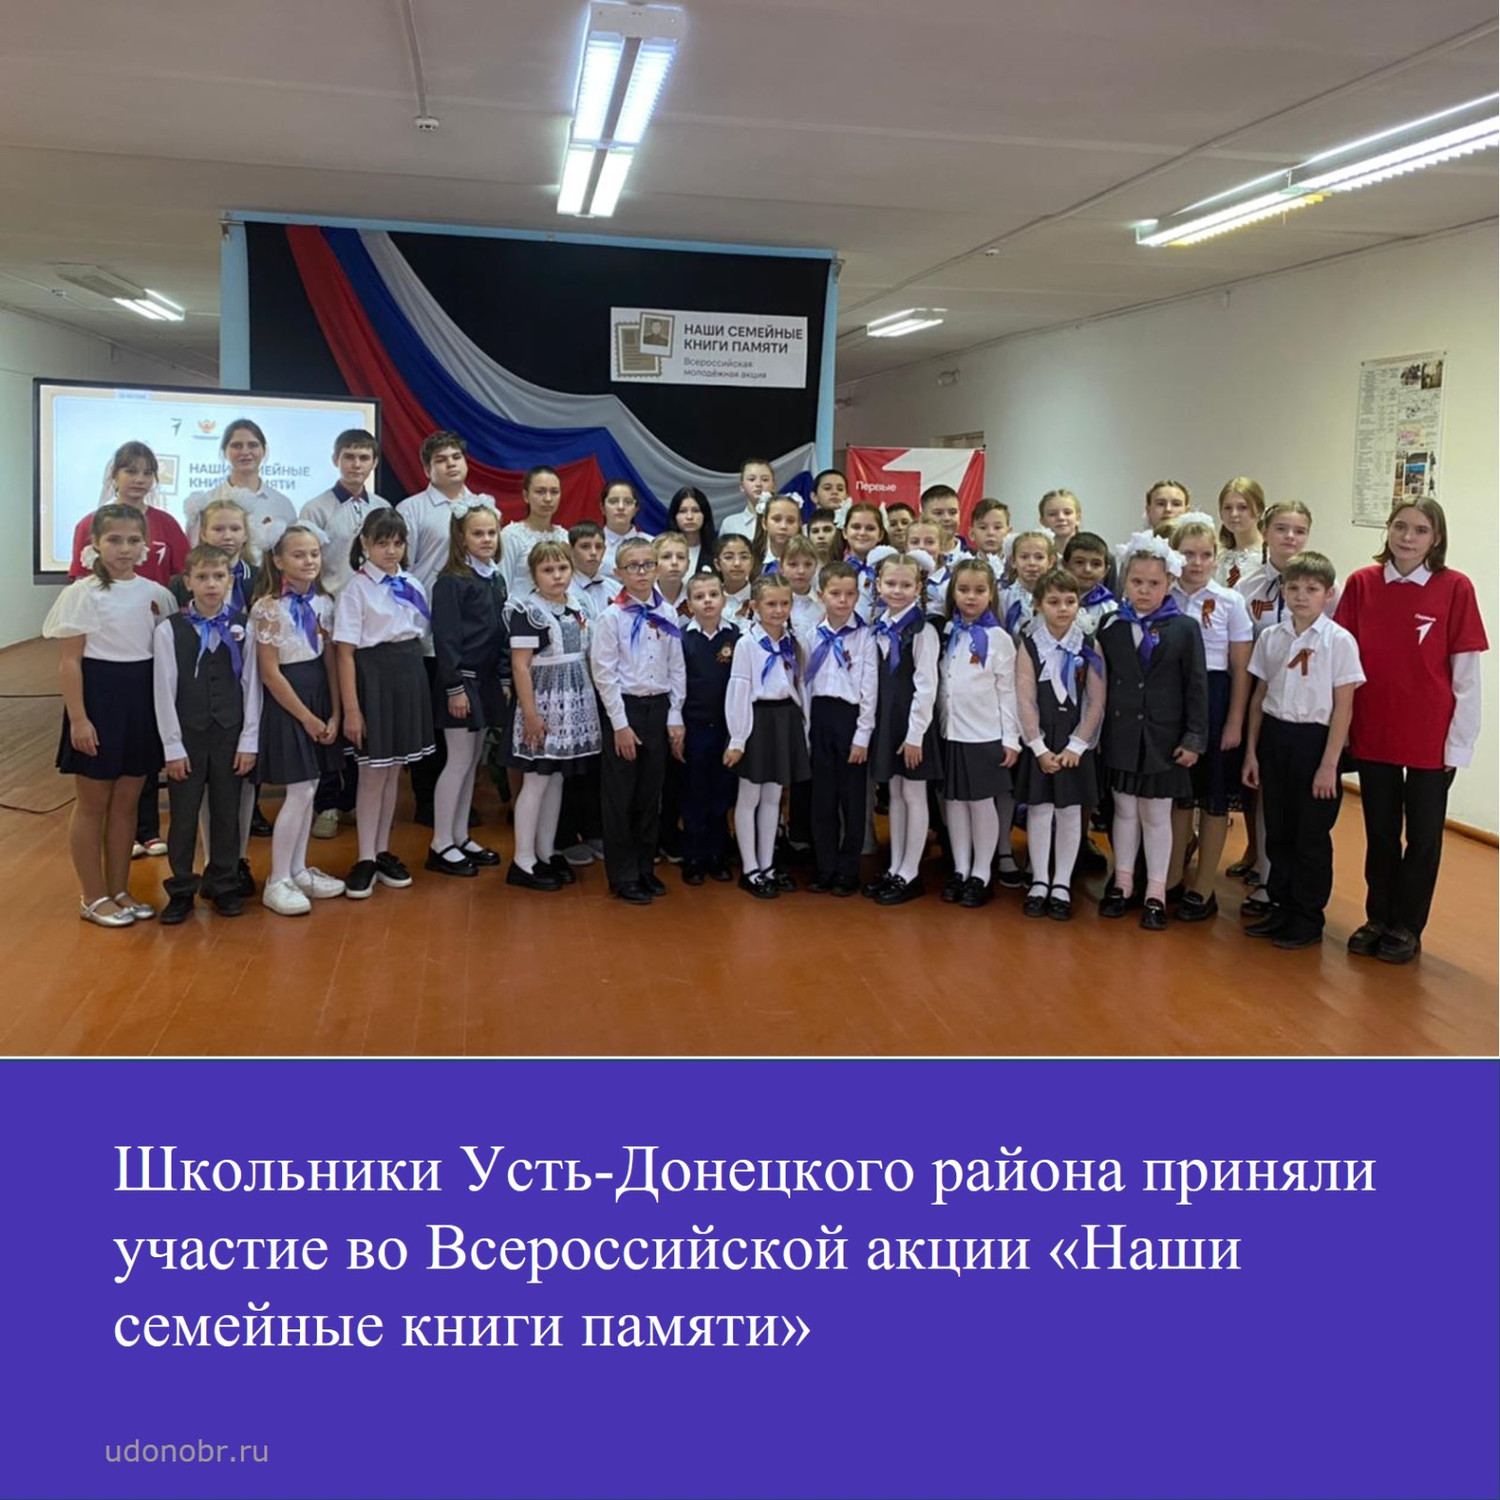 Школьники Усть-Донецкого района приняли участие во Всероссийской акции «Наши семейные книги памяти»